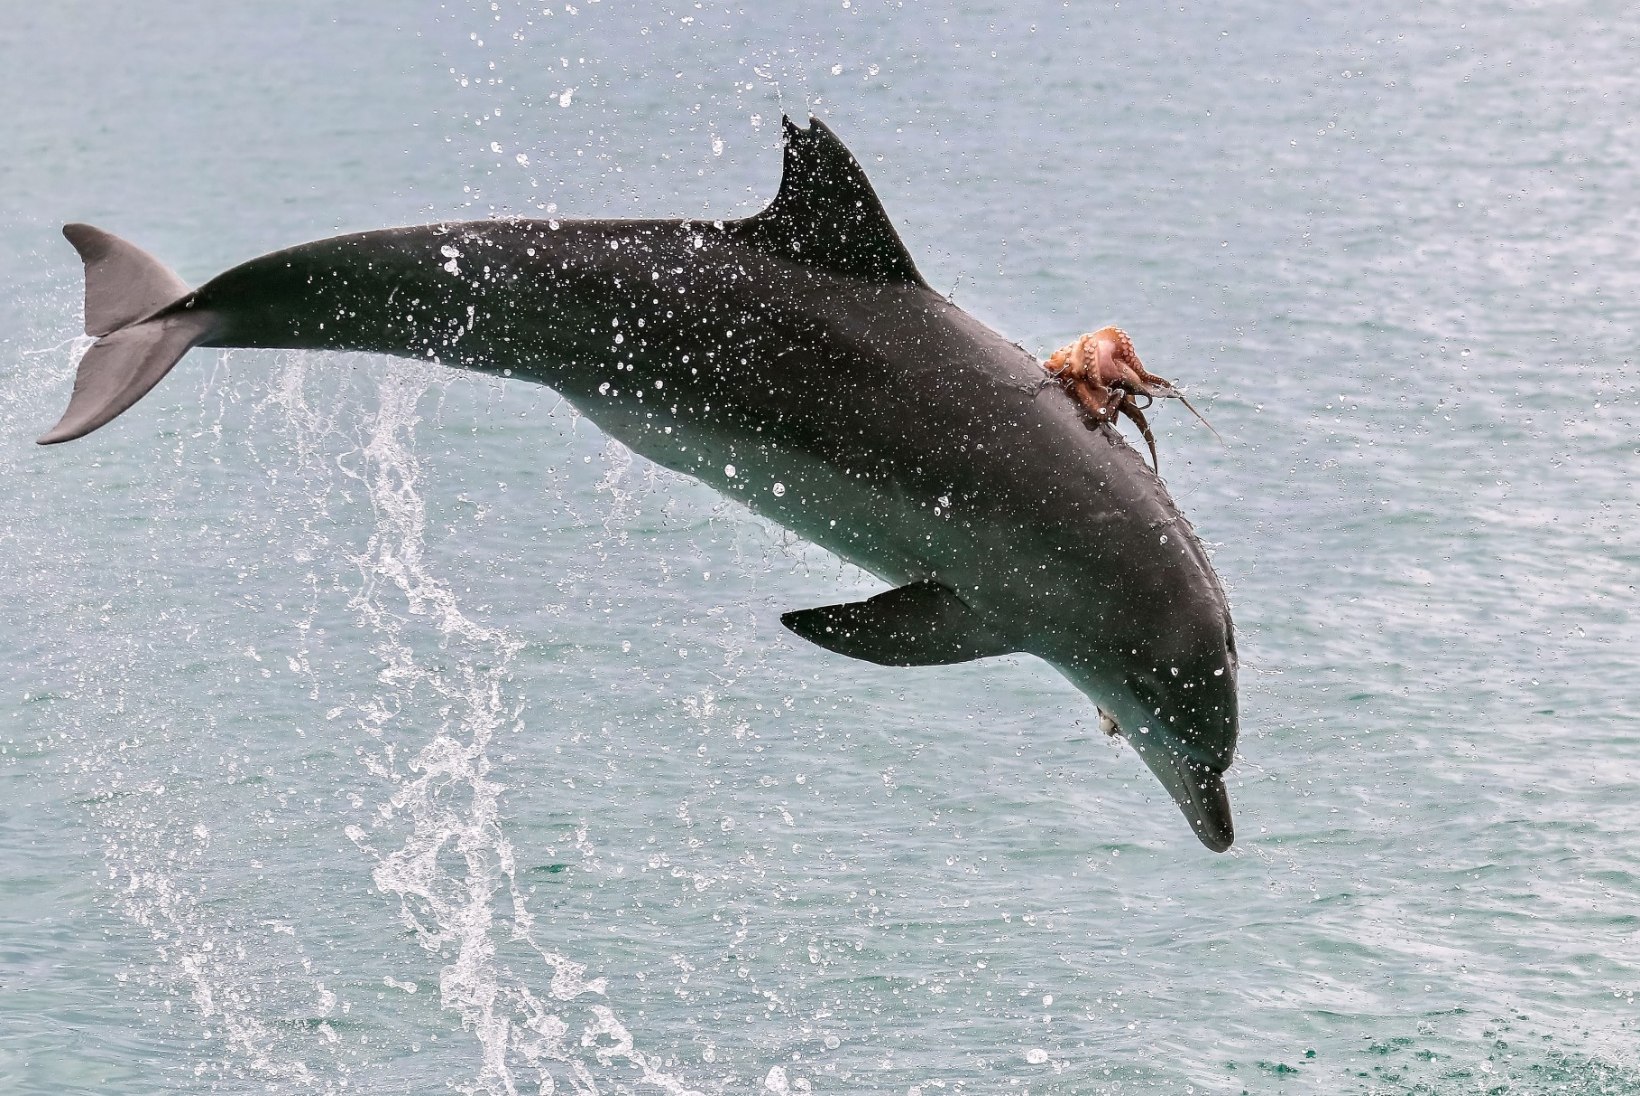 FOTOD | HARULDANE VAATEPILT: kaheksajalg klammerdus delfiini külge